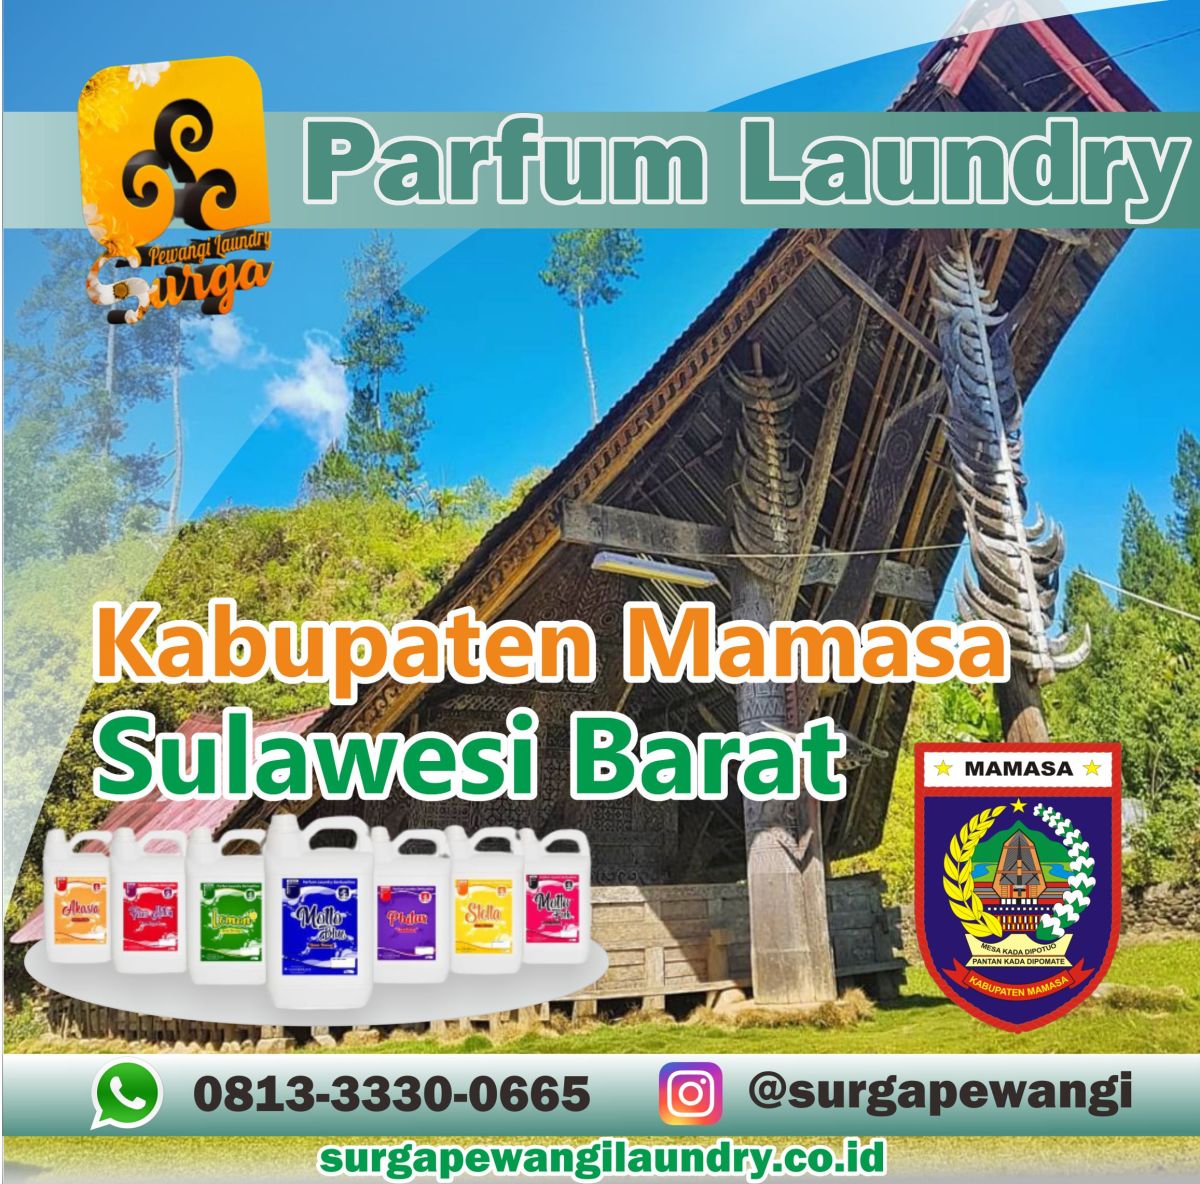 Parfum Laundry Kabupaten Mamasa, Sulawesi Barat